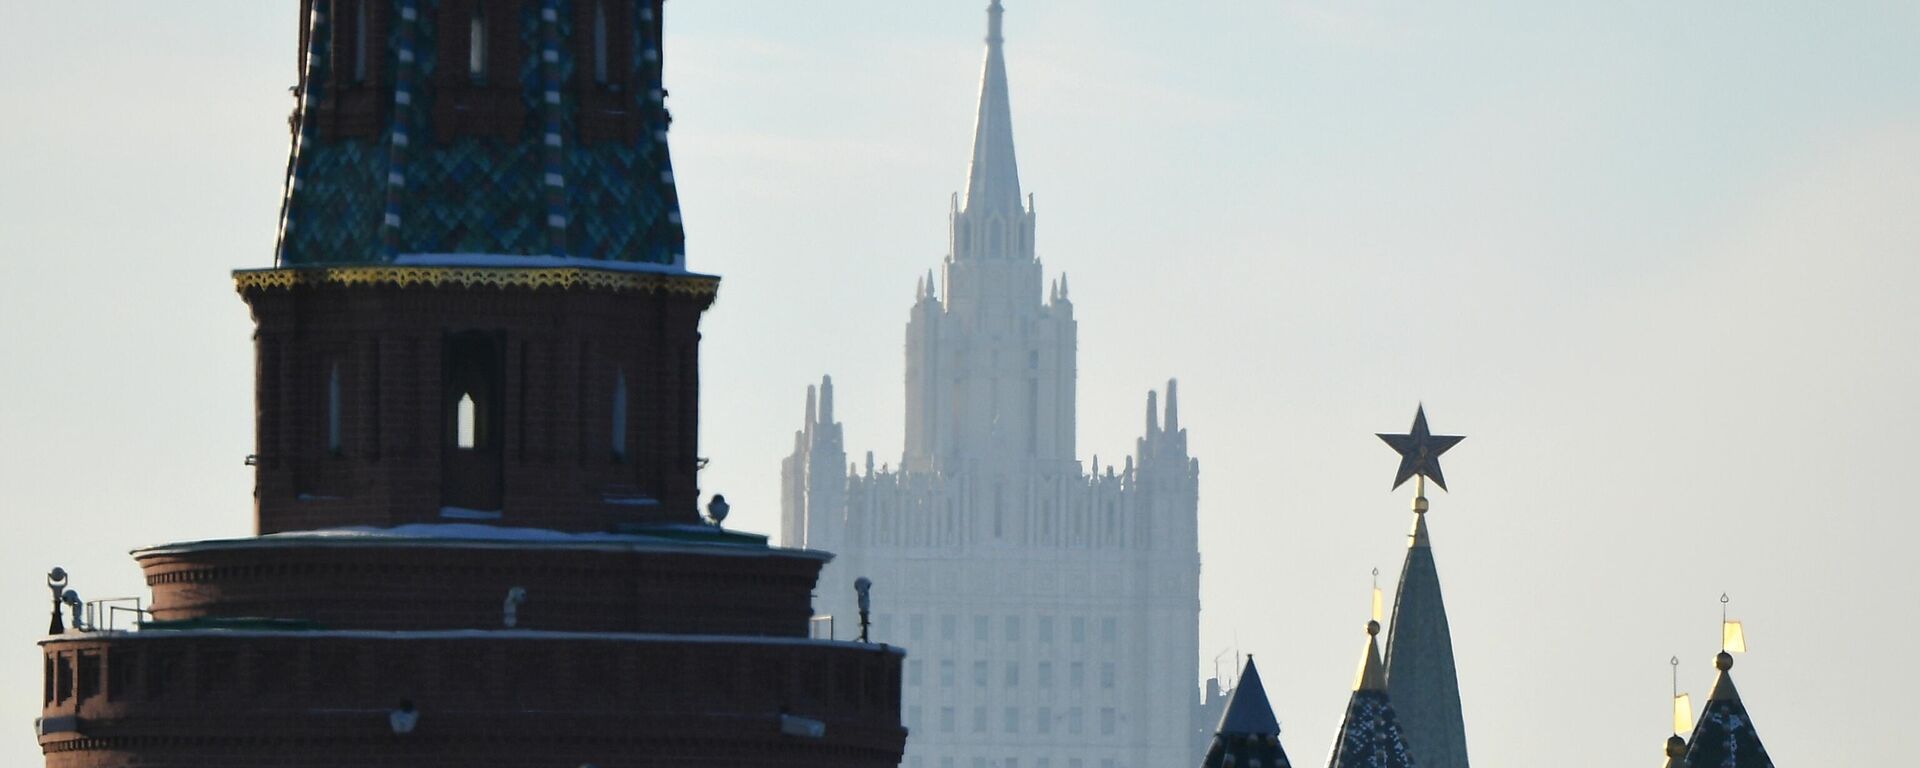 Вид на башни московского Кремля и здание МИД. - Sputnik Молдова, 1920, 17.12.2021